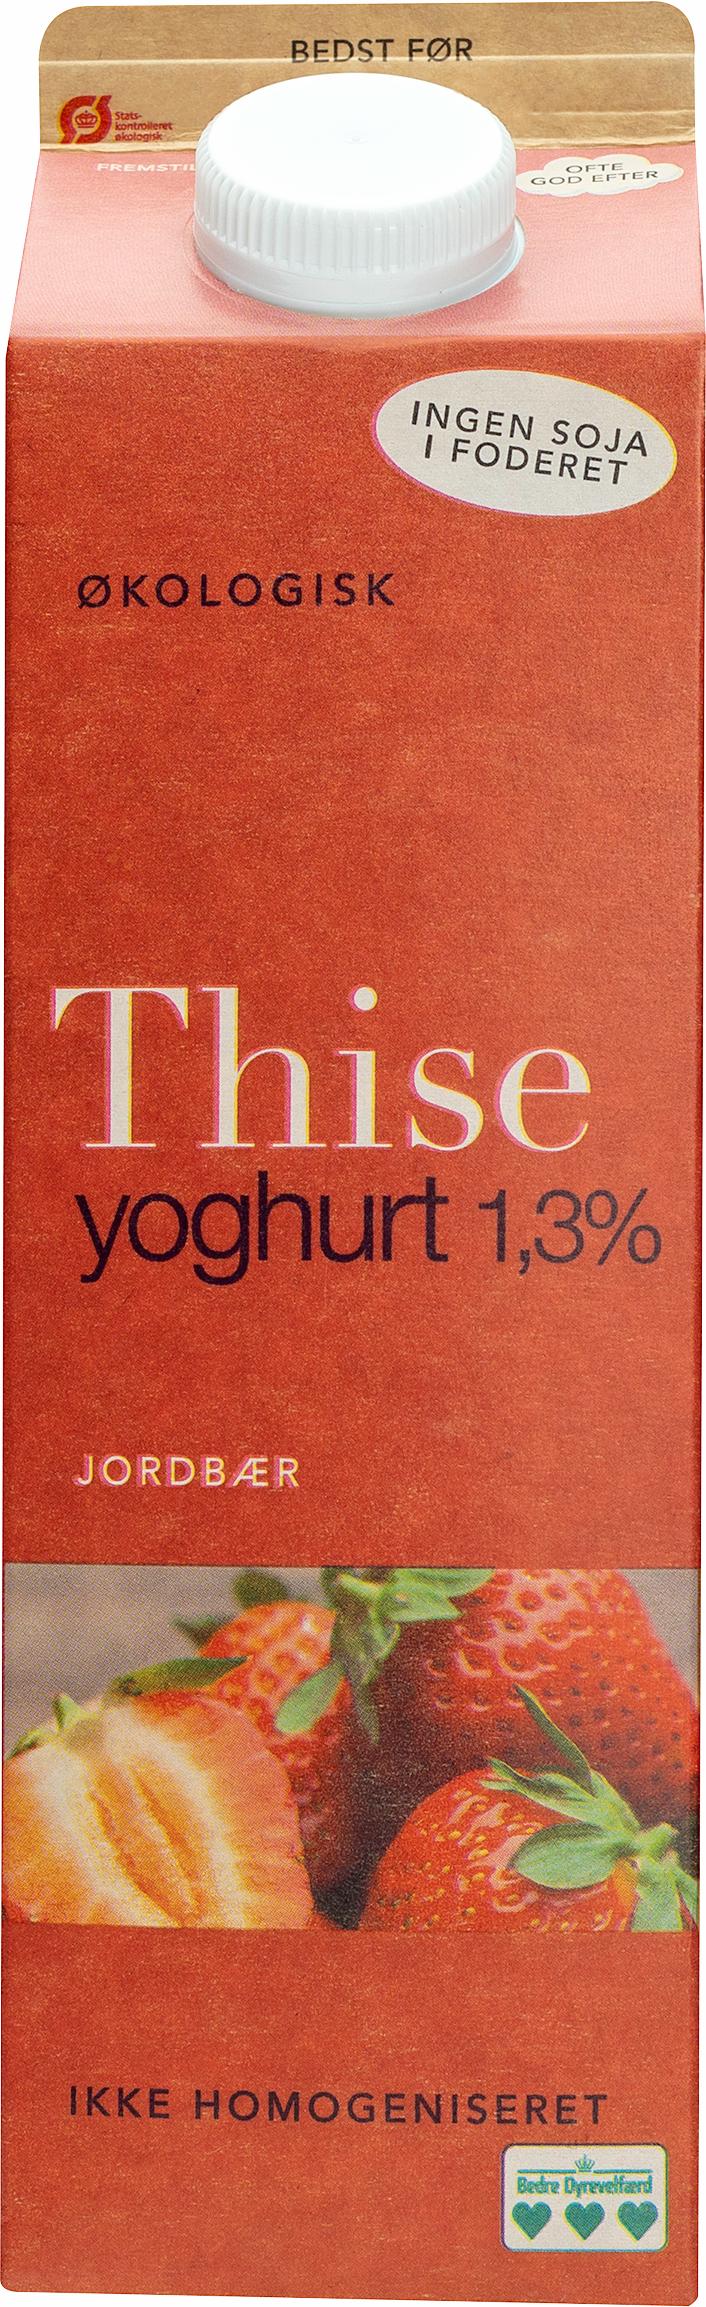 Thise Yoghurt Jordbær 1,3% 1000g